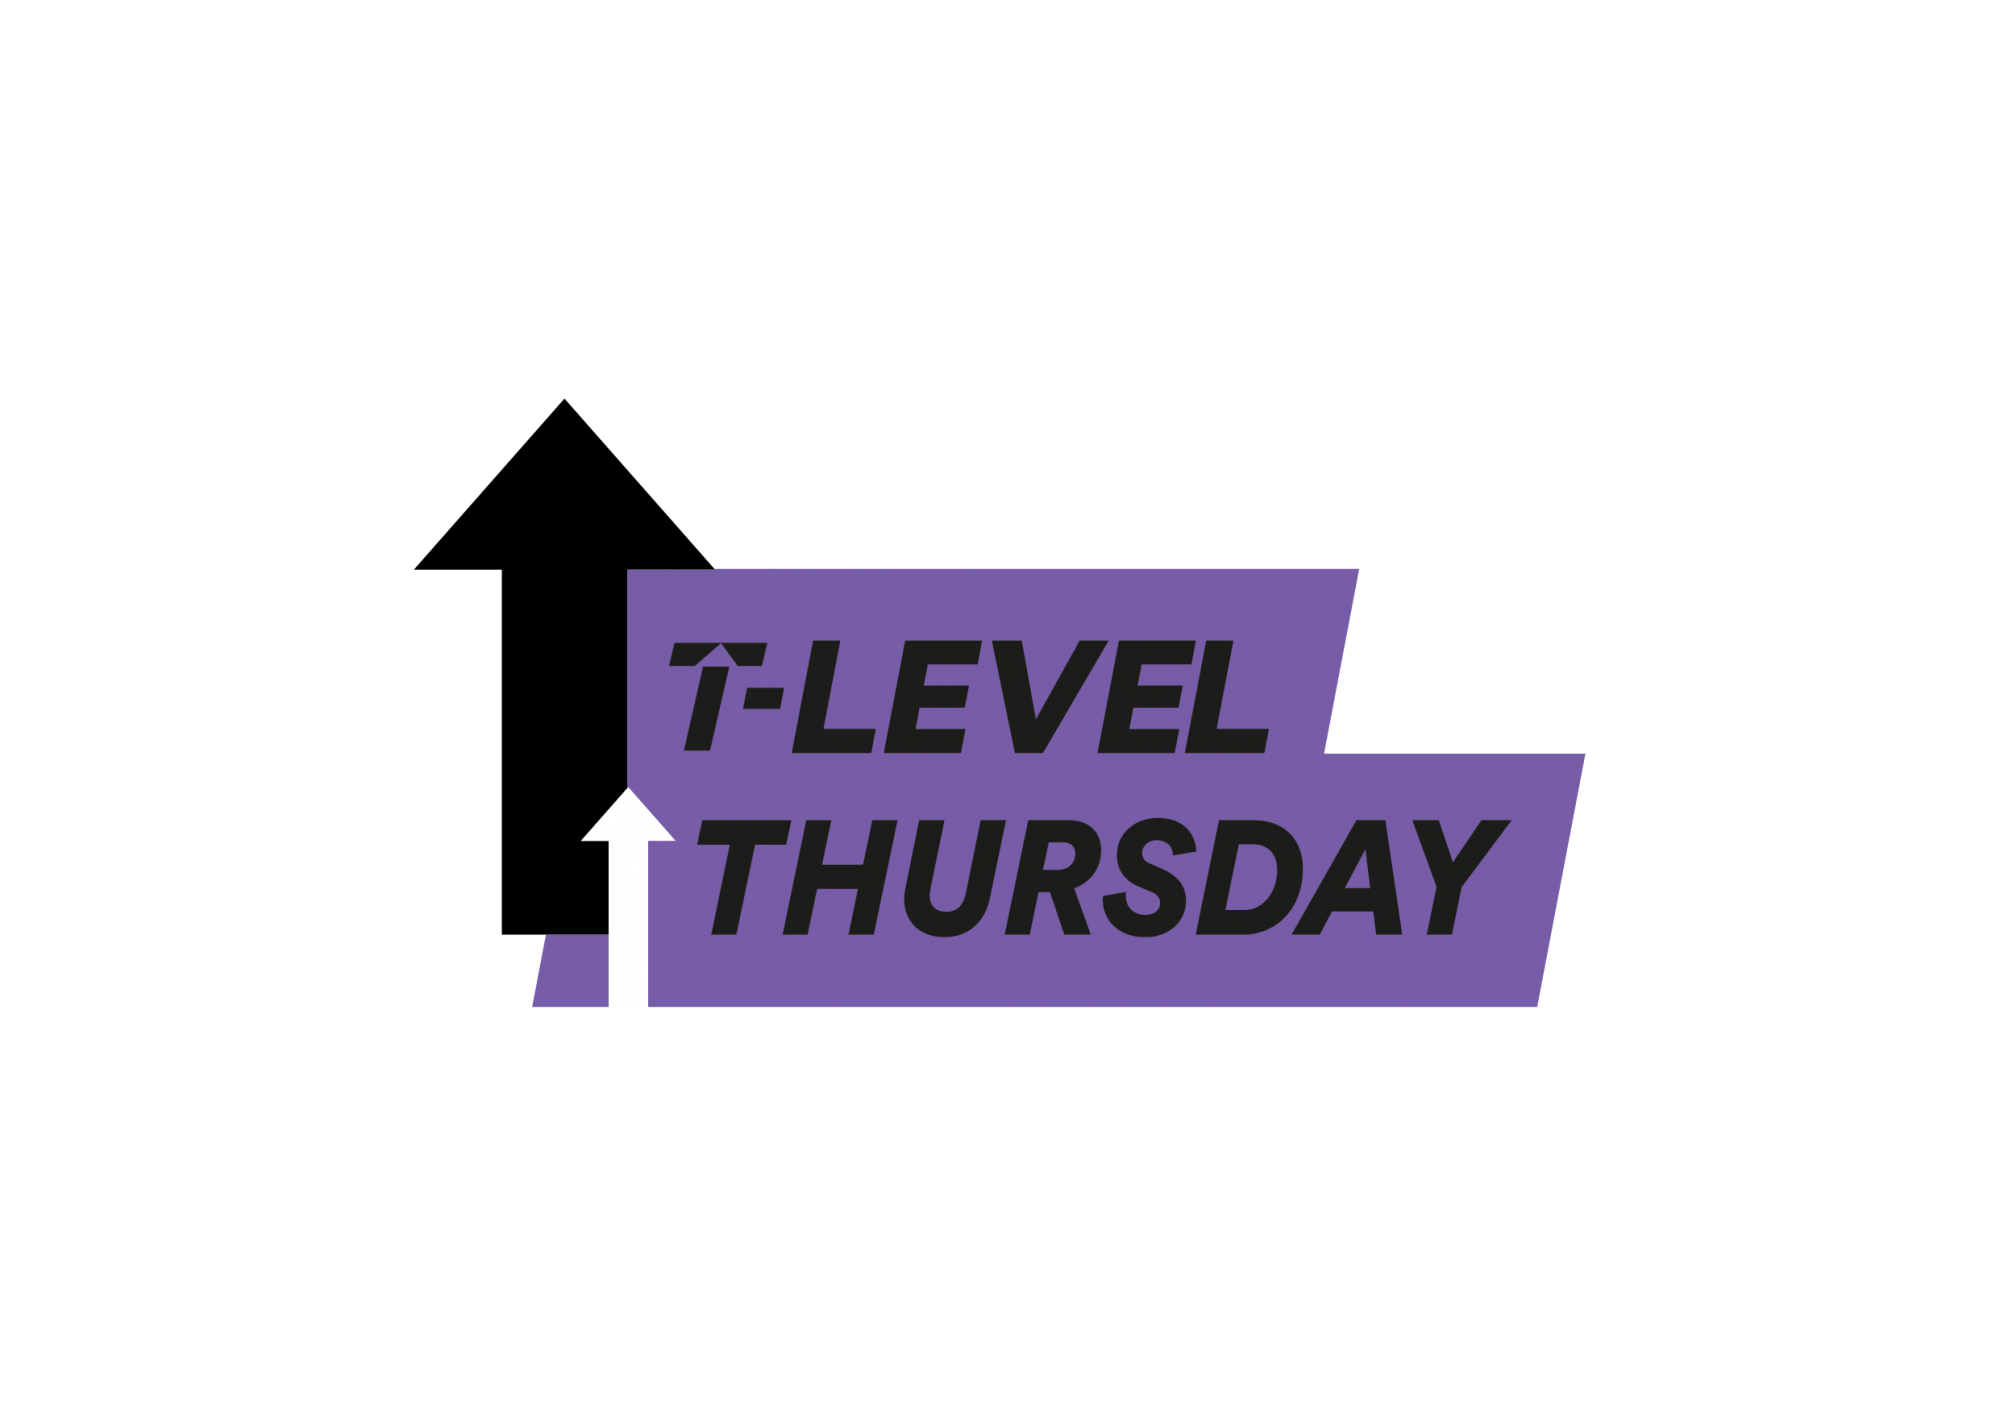 T Level Thursday logo